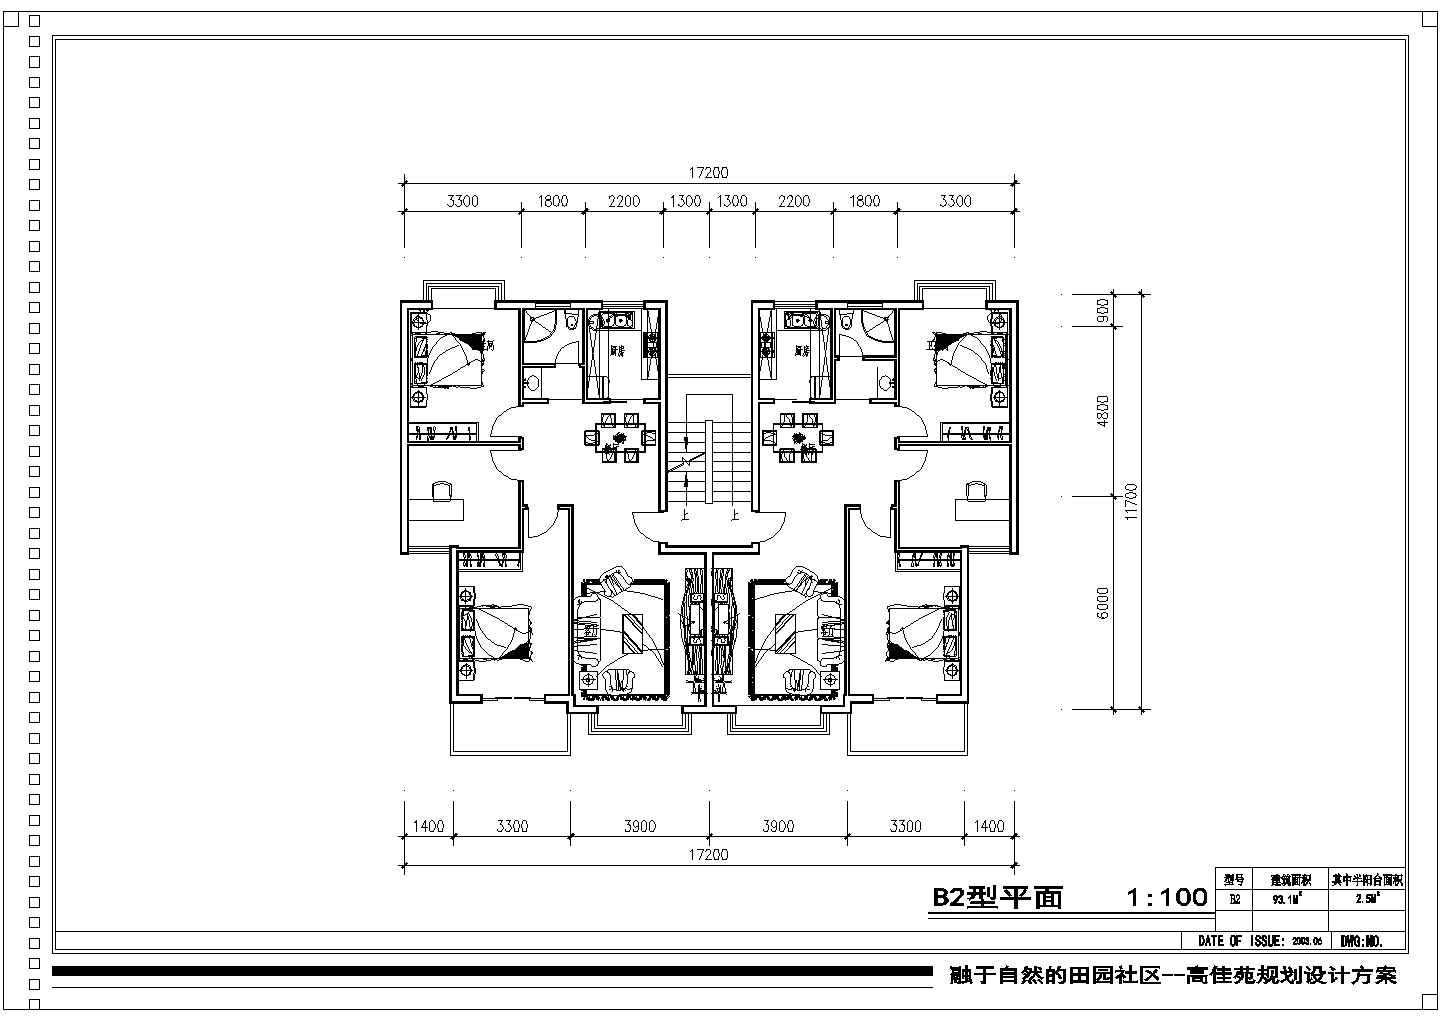 高佳苑小区户型样板房全套建筑平面图(含各层平面图)